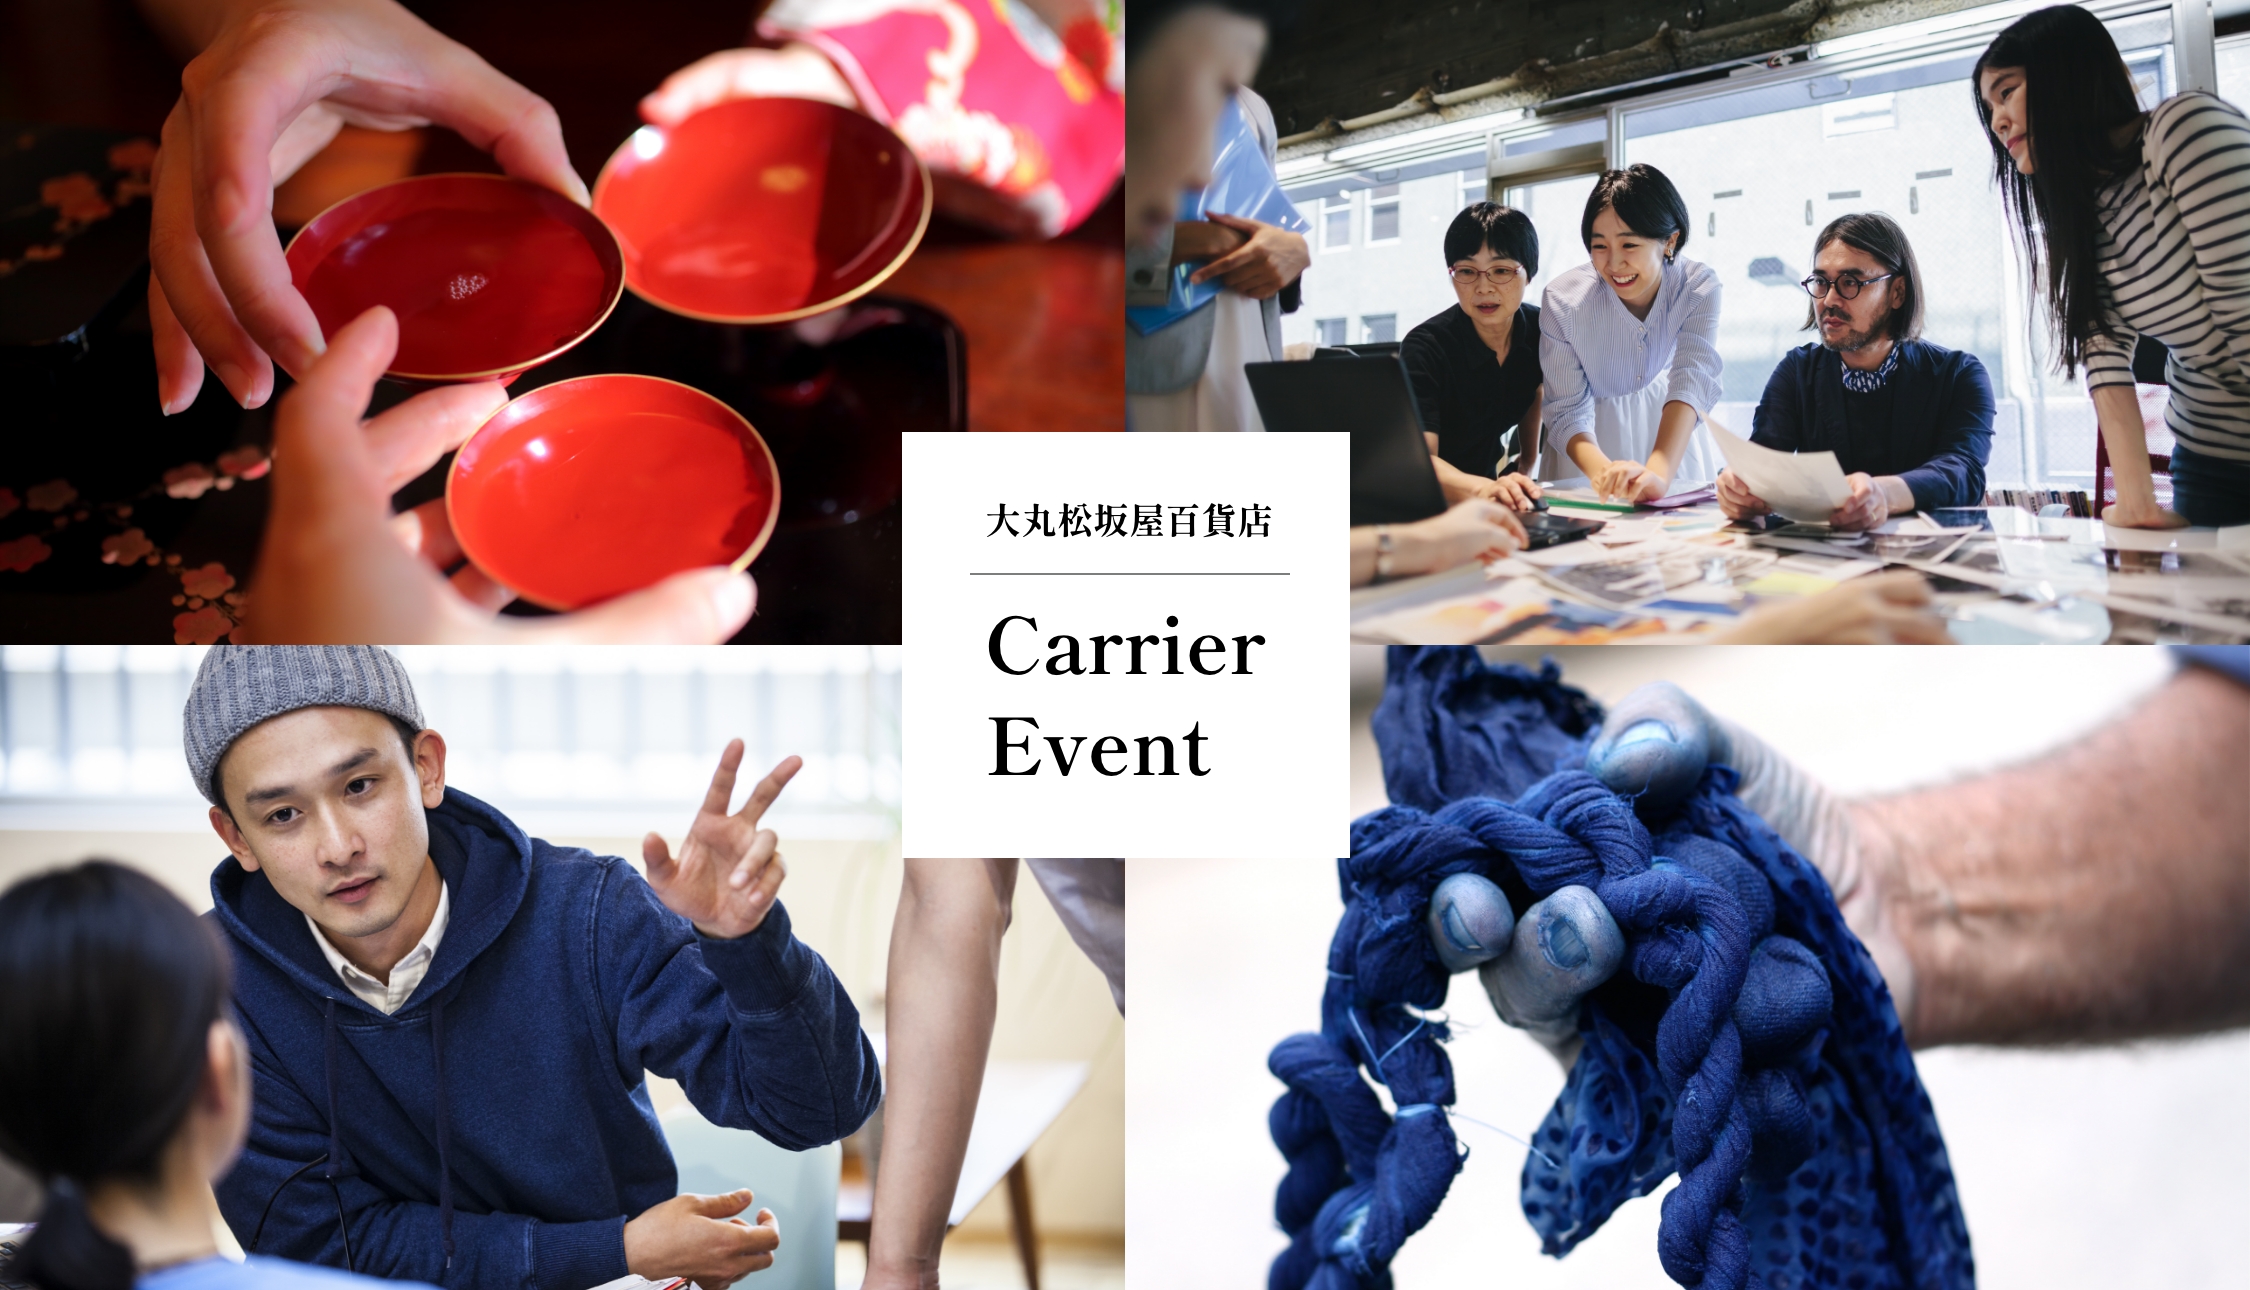 大丸松坂屋百貨店 Carrier Event